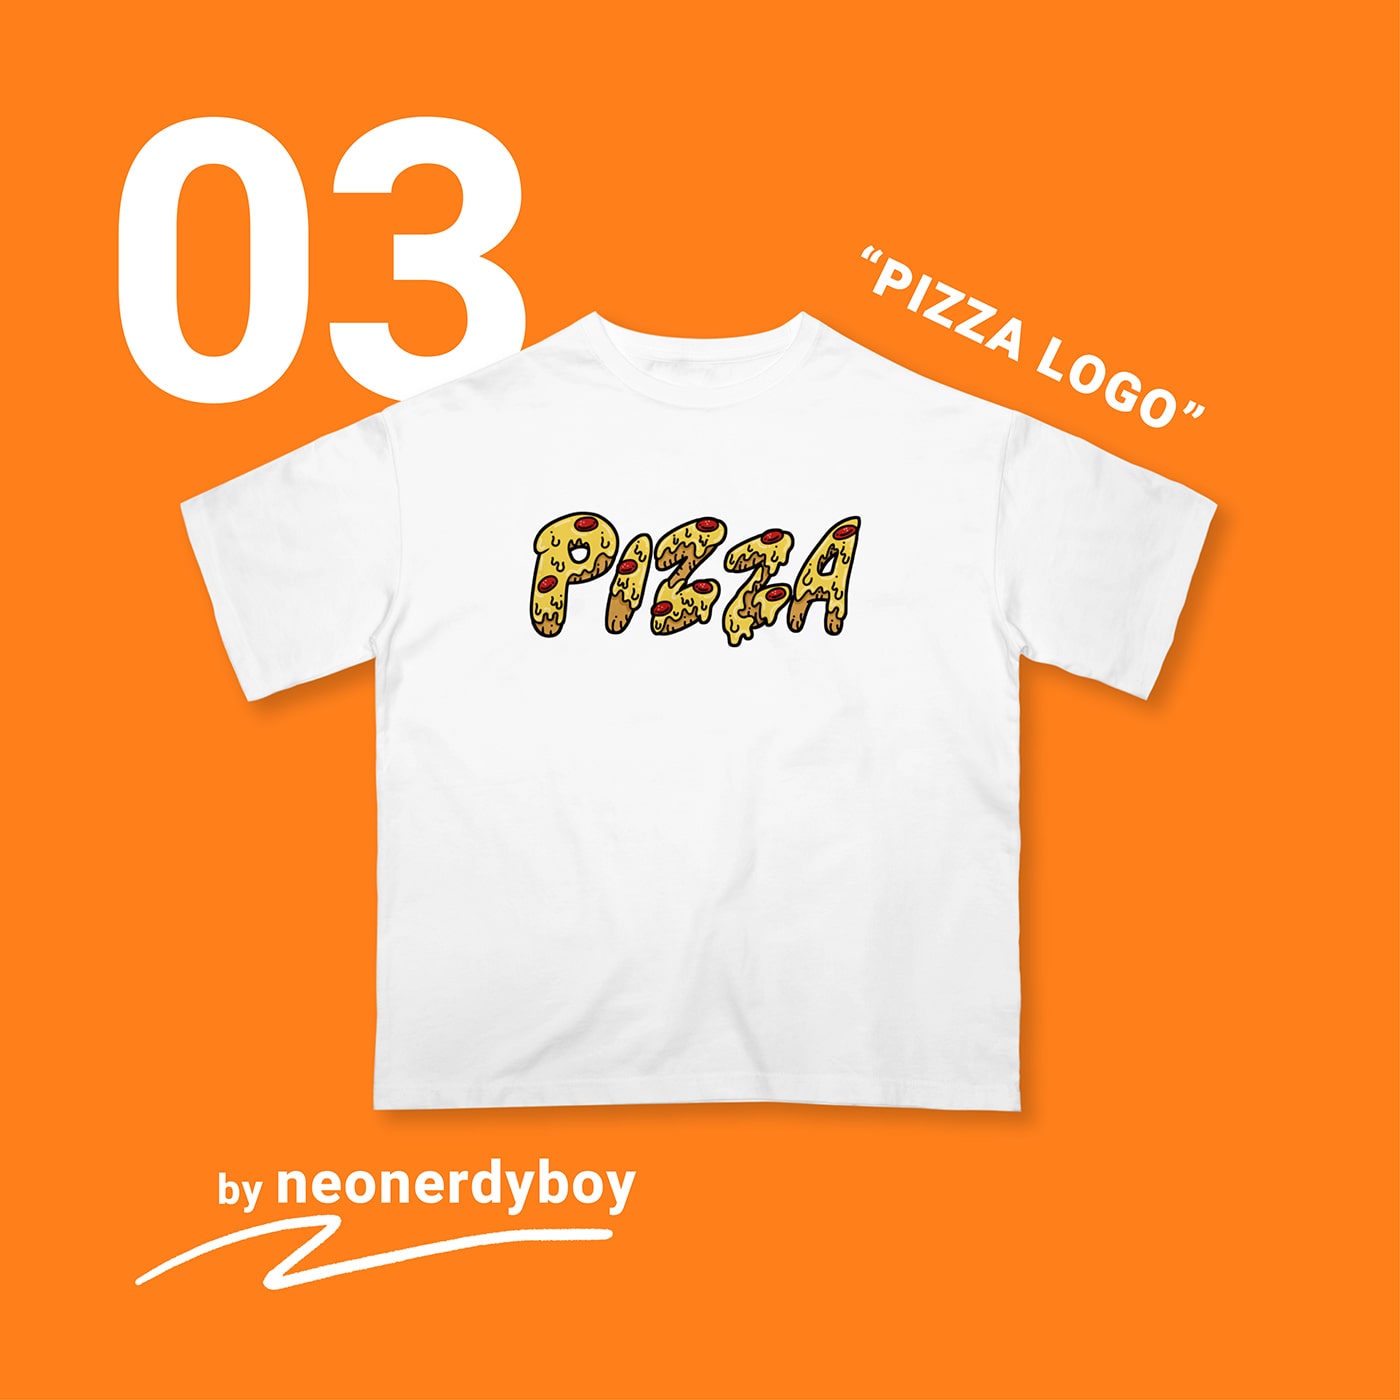 03 “PIZZA LOGO” by neonerdyboy